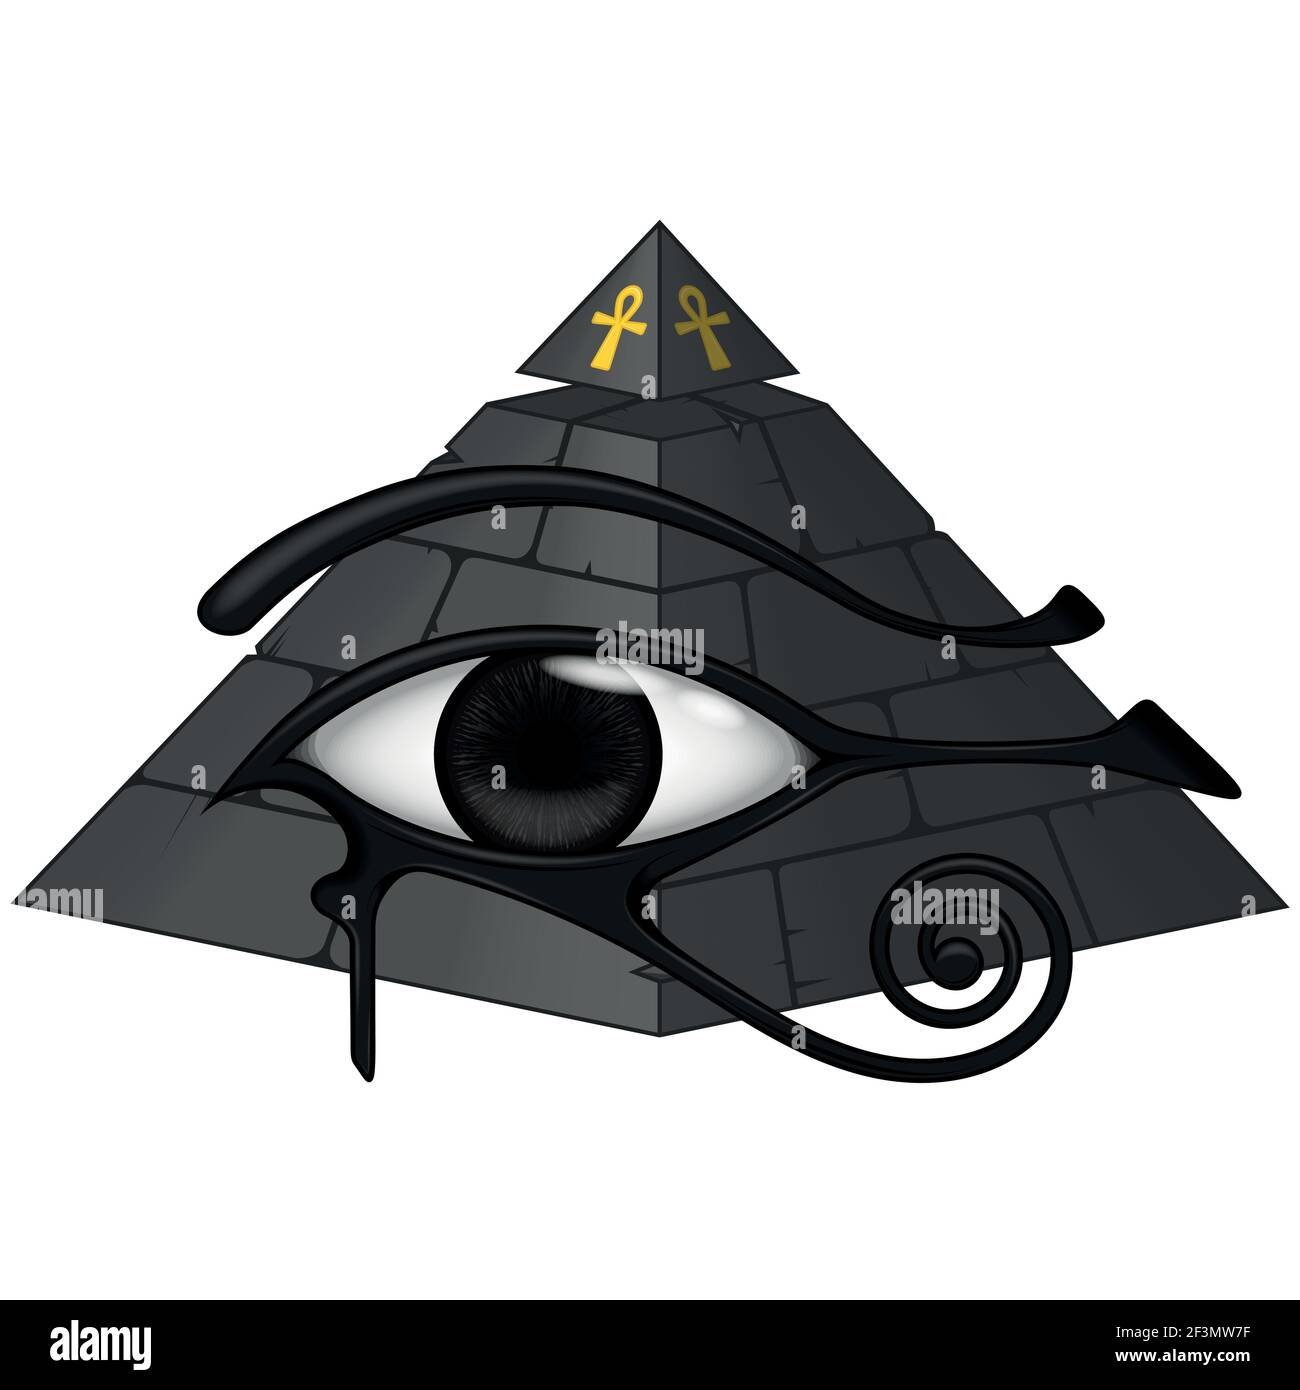 Vektor-Design der altägyptischen Pyramide mit 3D Auge des horus, altägyptische Symbole, Auge des horus, gelooptes Kreuz, alle auf weißem Hintergrund. Stock Vektor